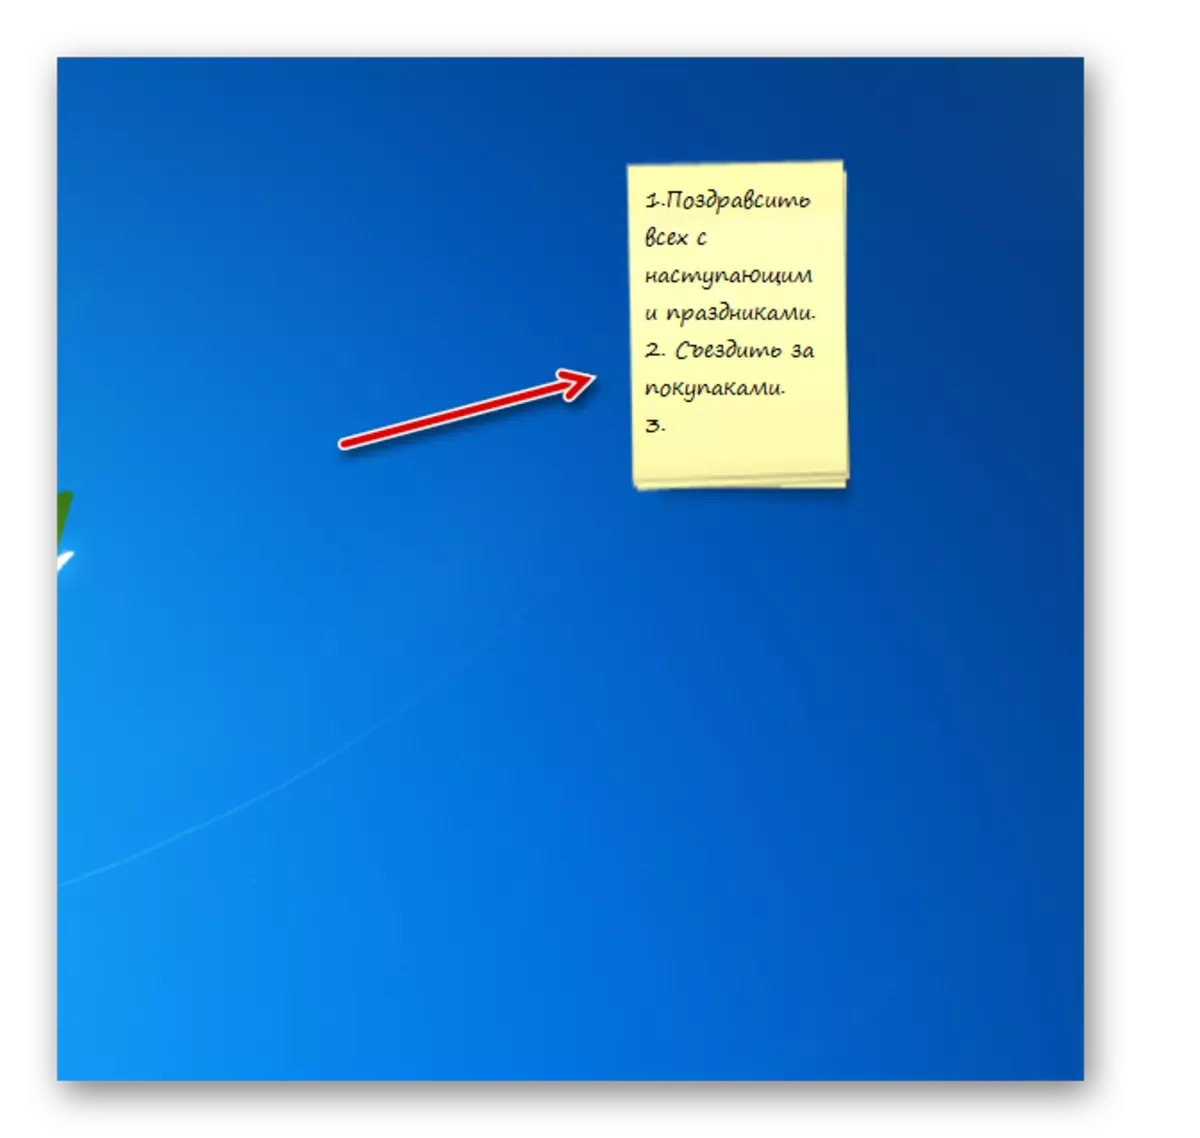 Vini re në Interface Gadget Gadget Gadget më të gjatë në desktop në Windows 7